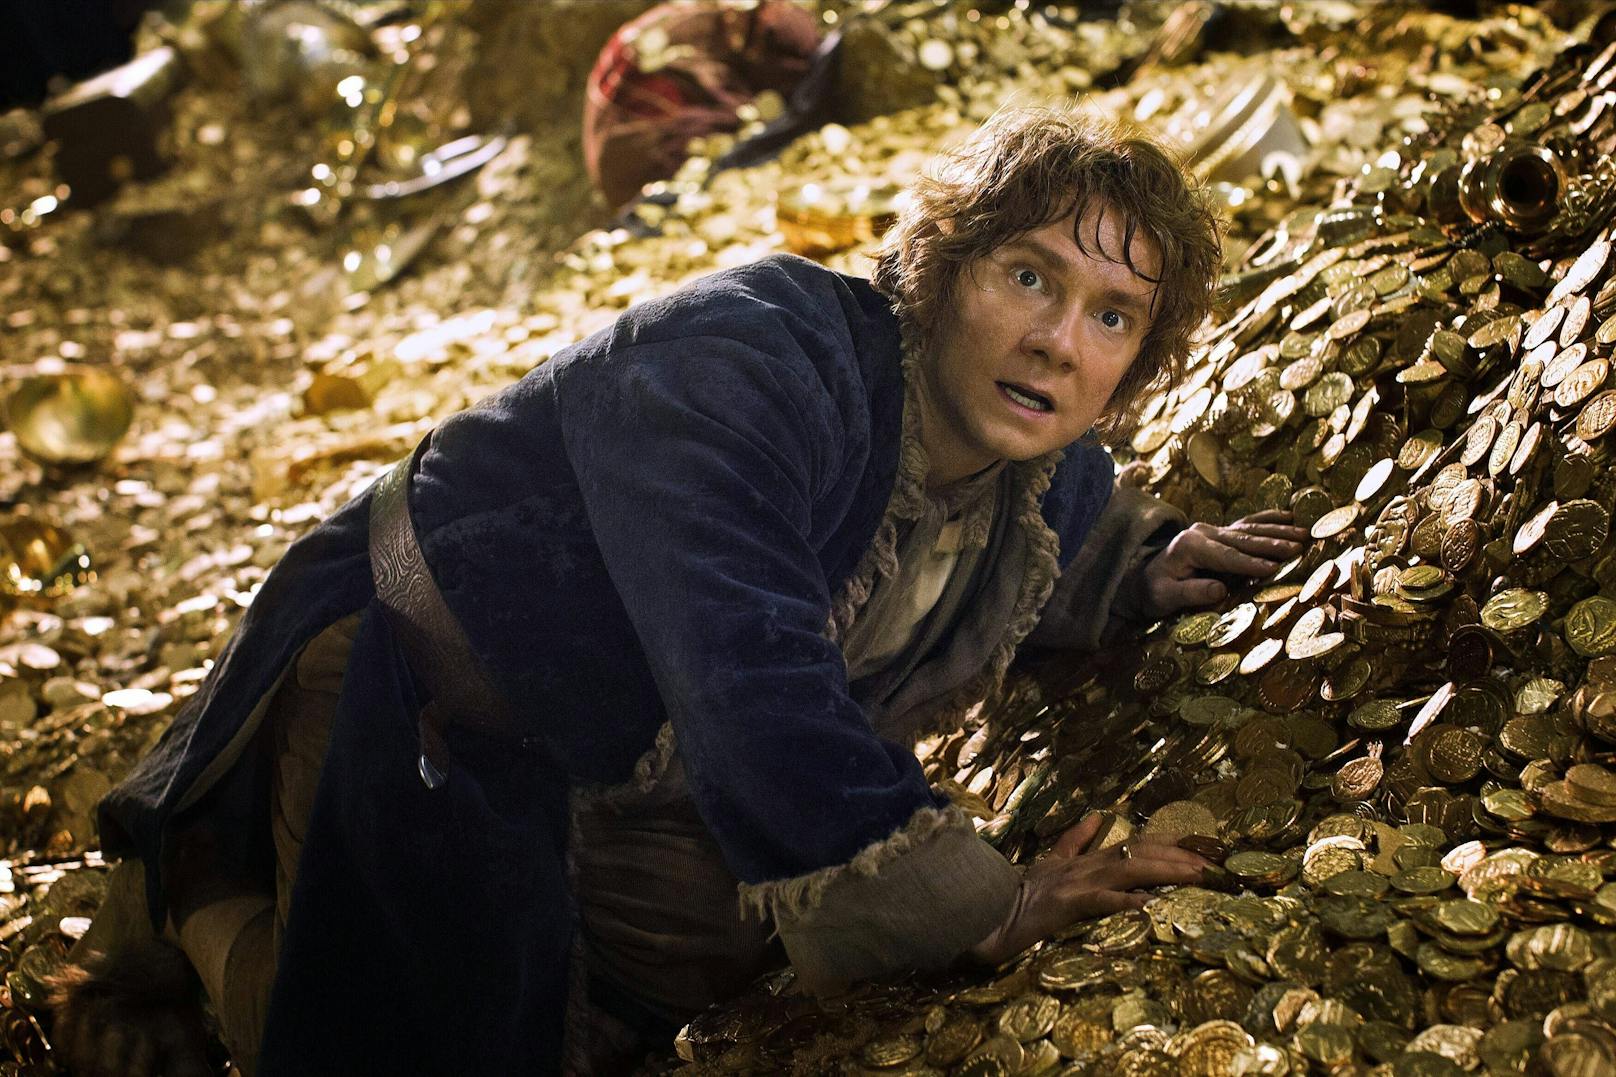 Vom Hobbit zum Hingucker: "Bilbo" kaum wiederzuerkennen